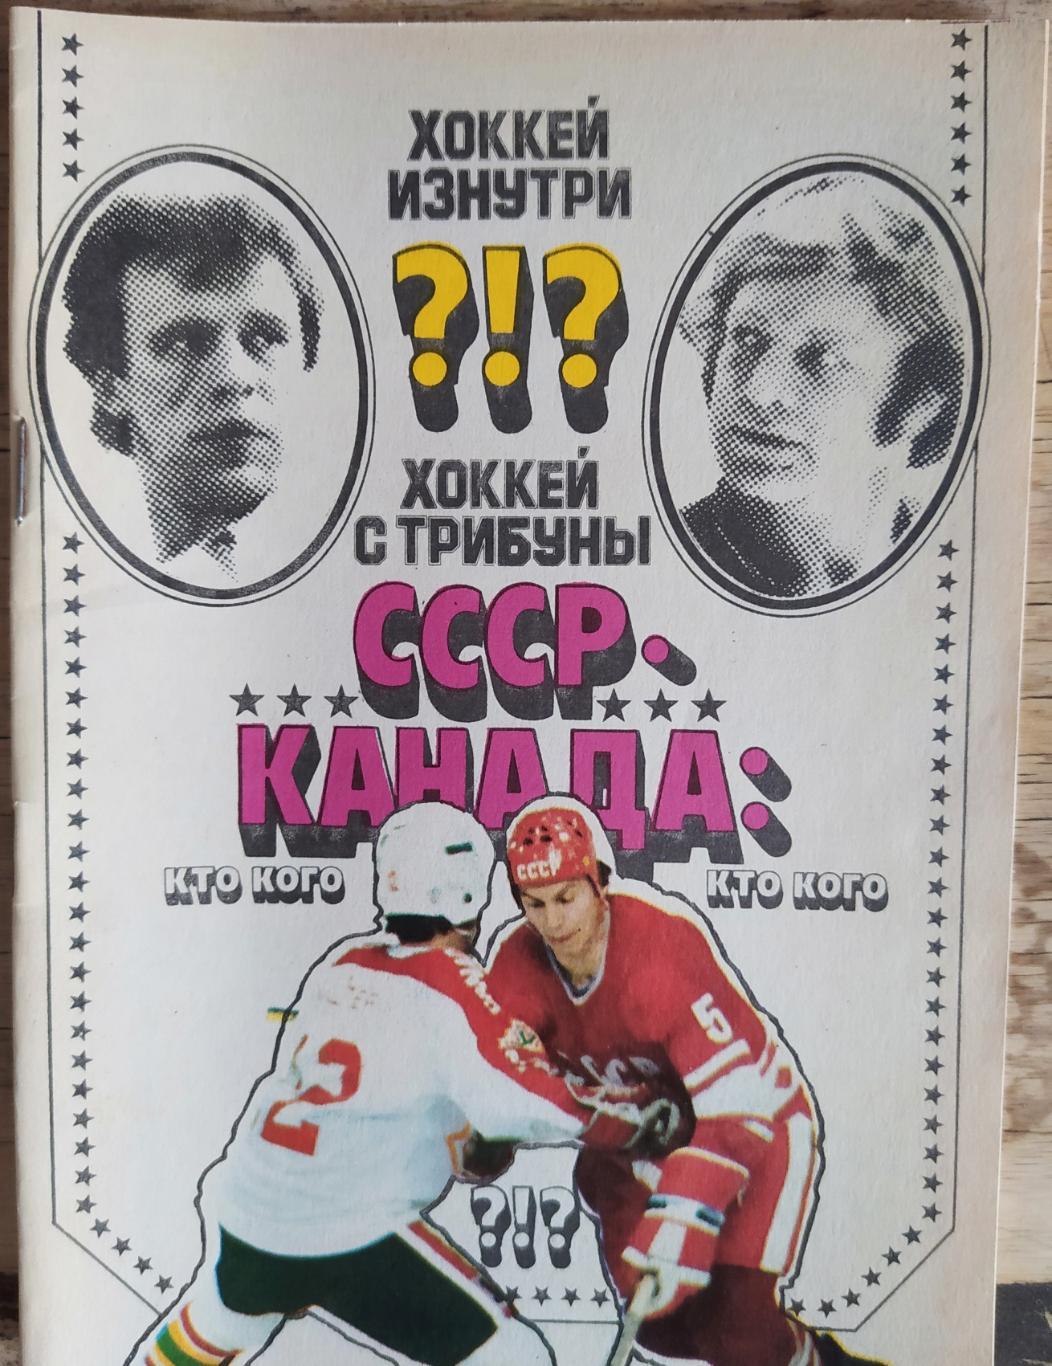 Хоккей изнутри СССР-Канада 1989